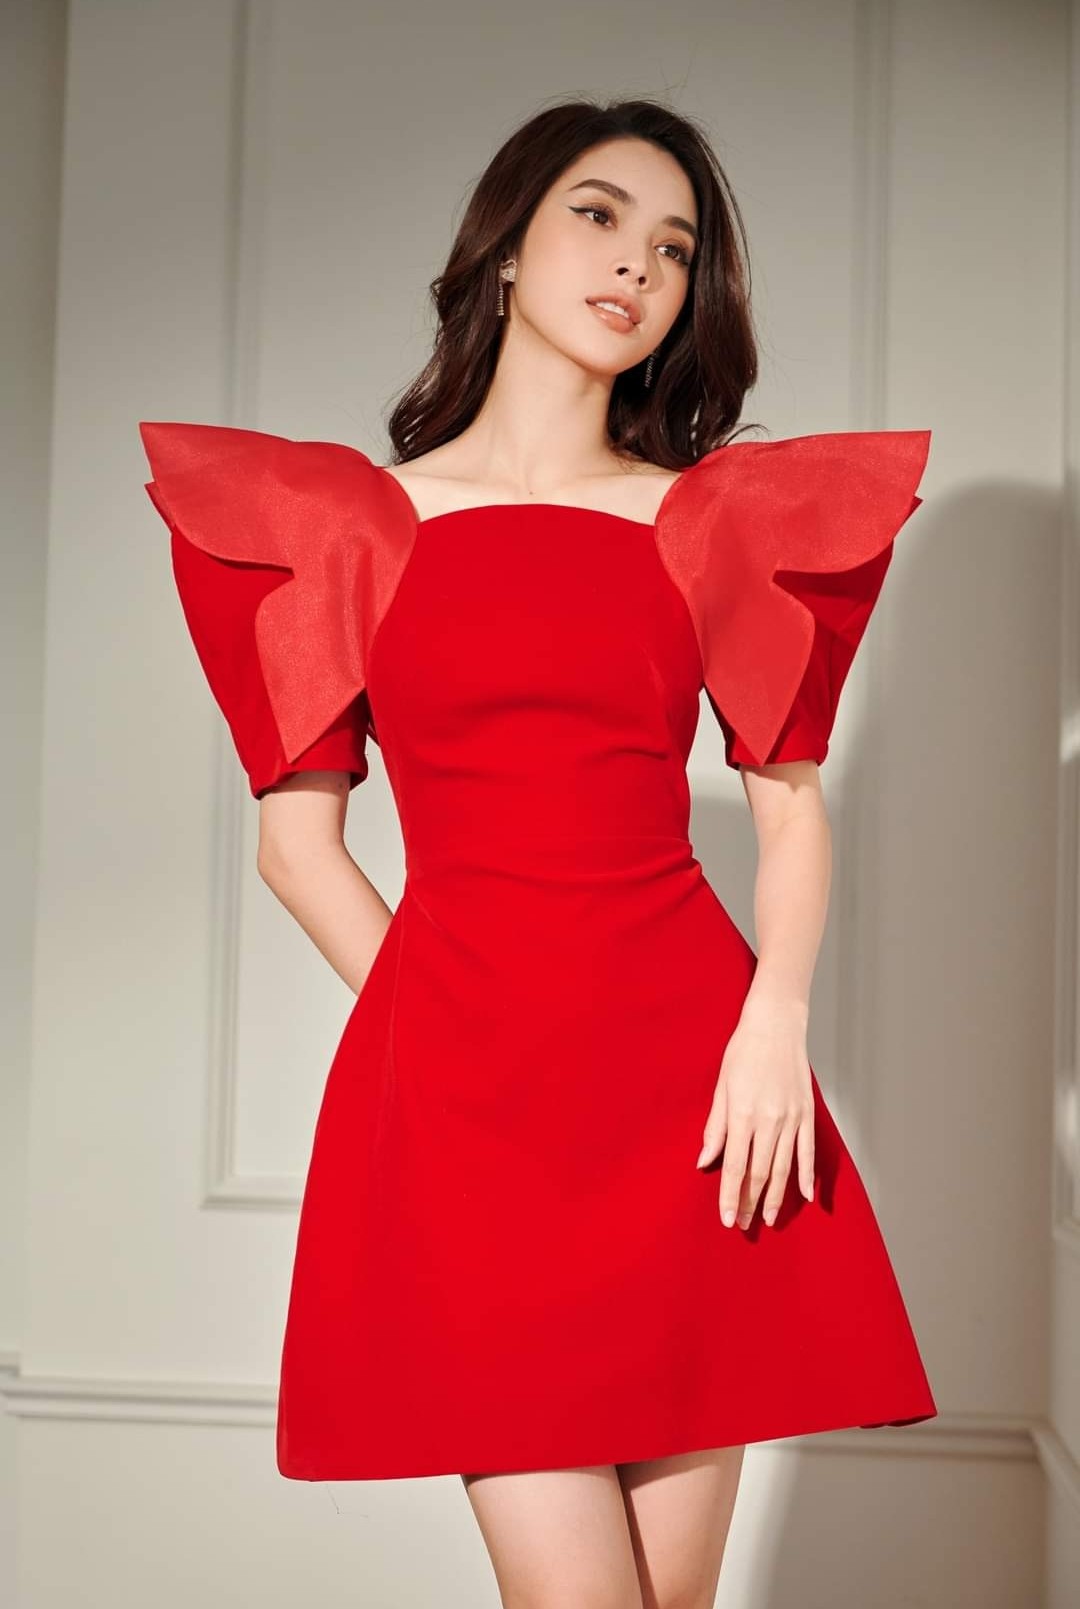 Những mẫu váy đỏ nữ tính, quyến rũ cho phái đẹp